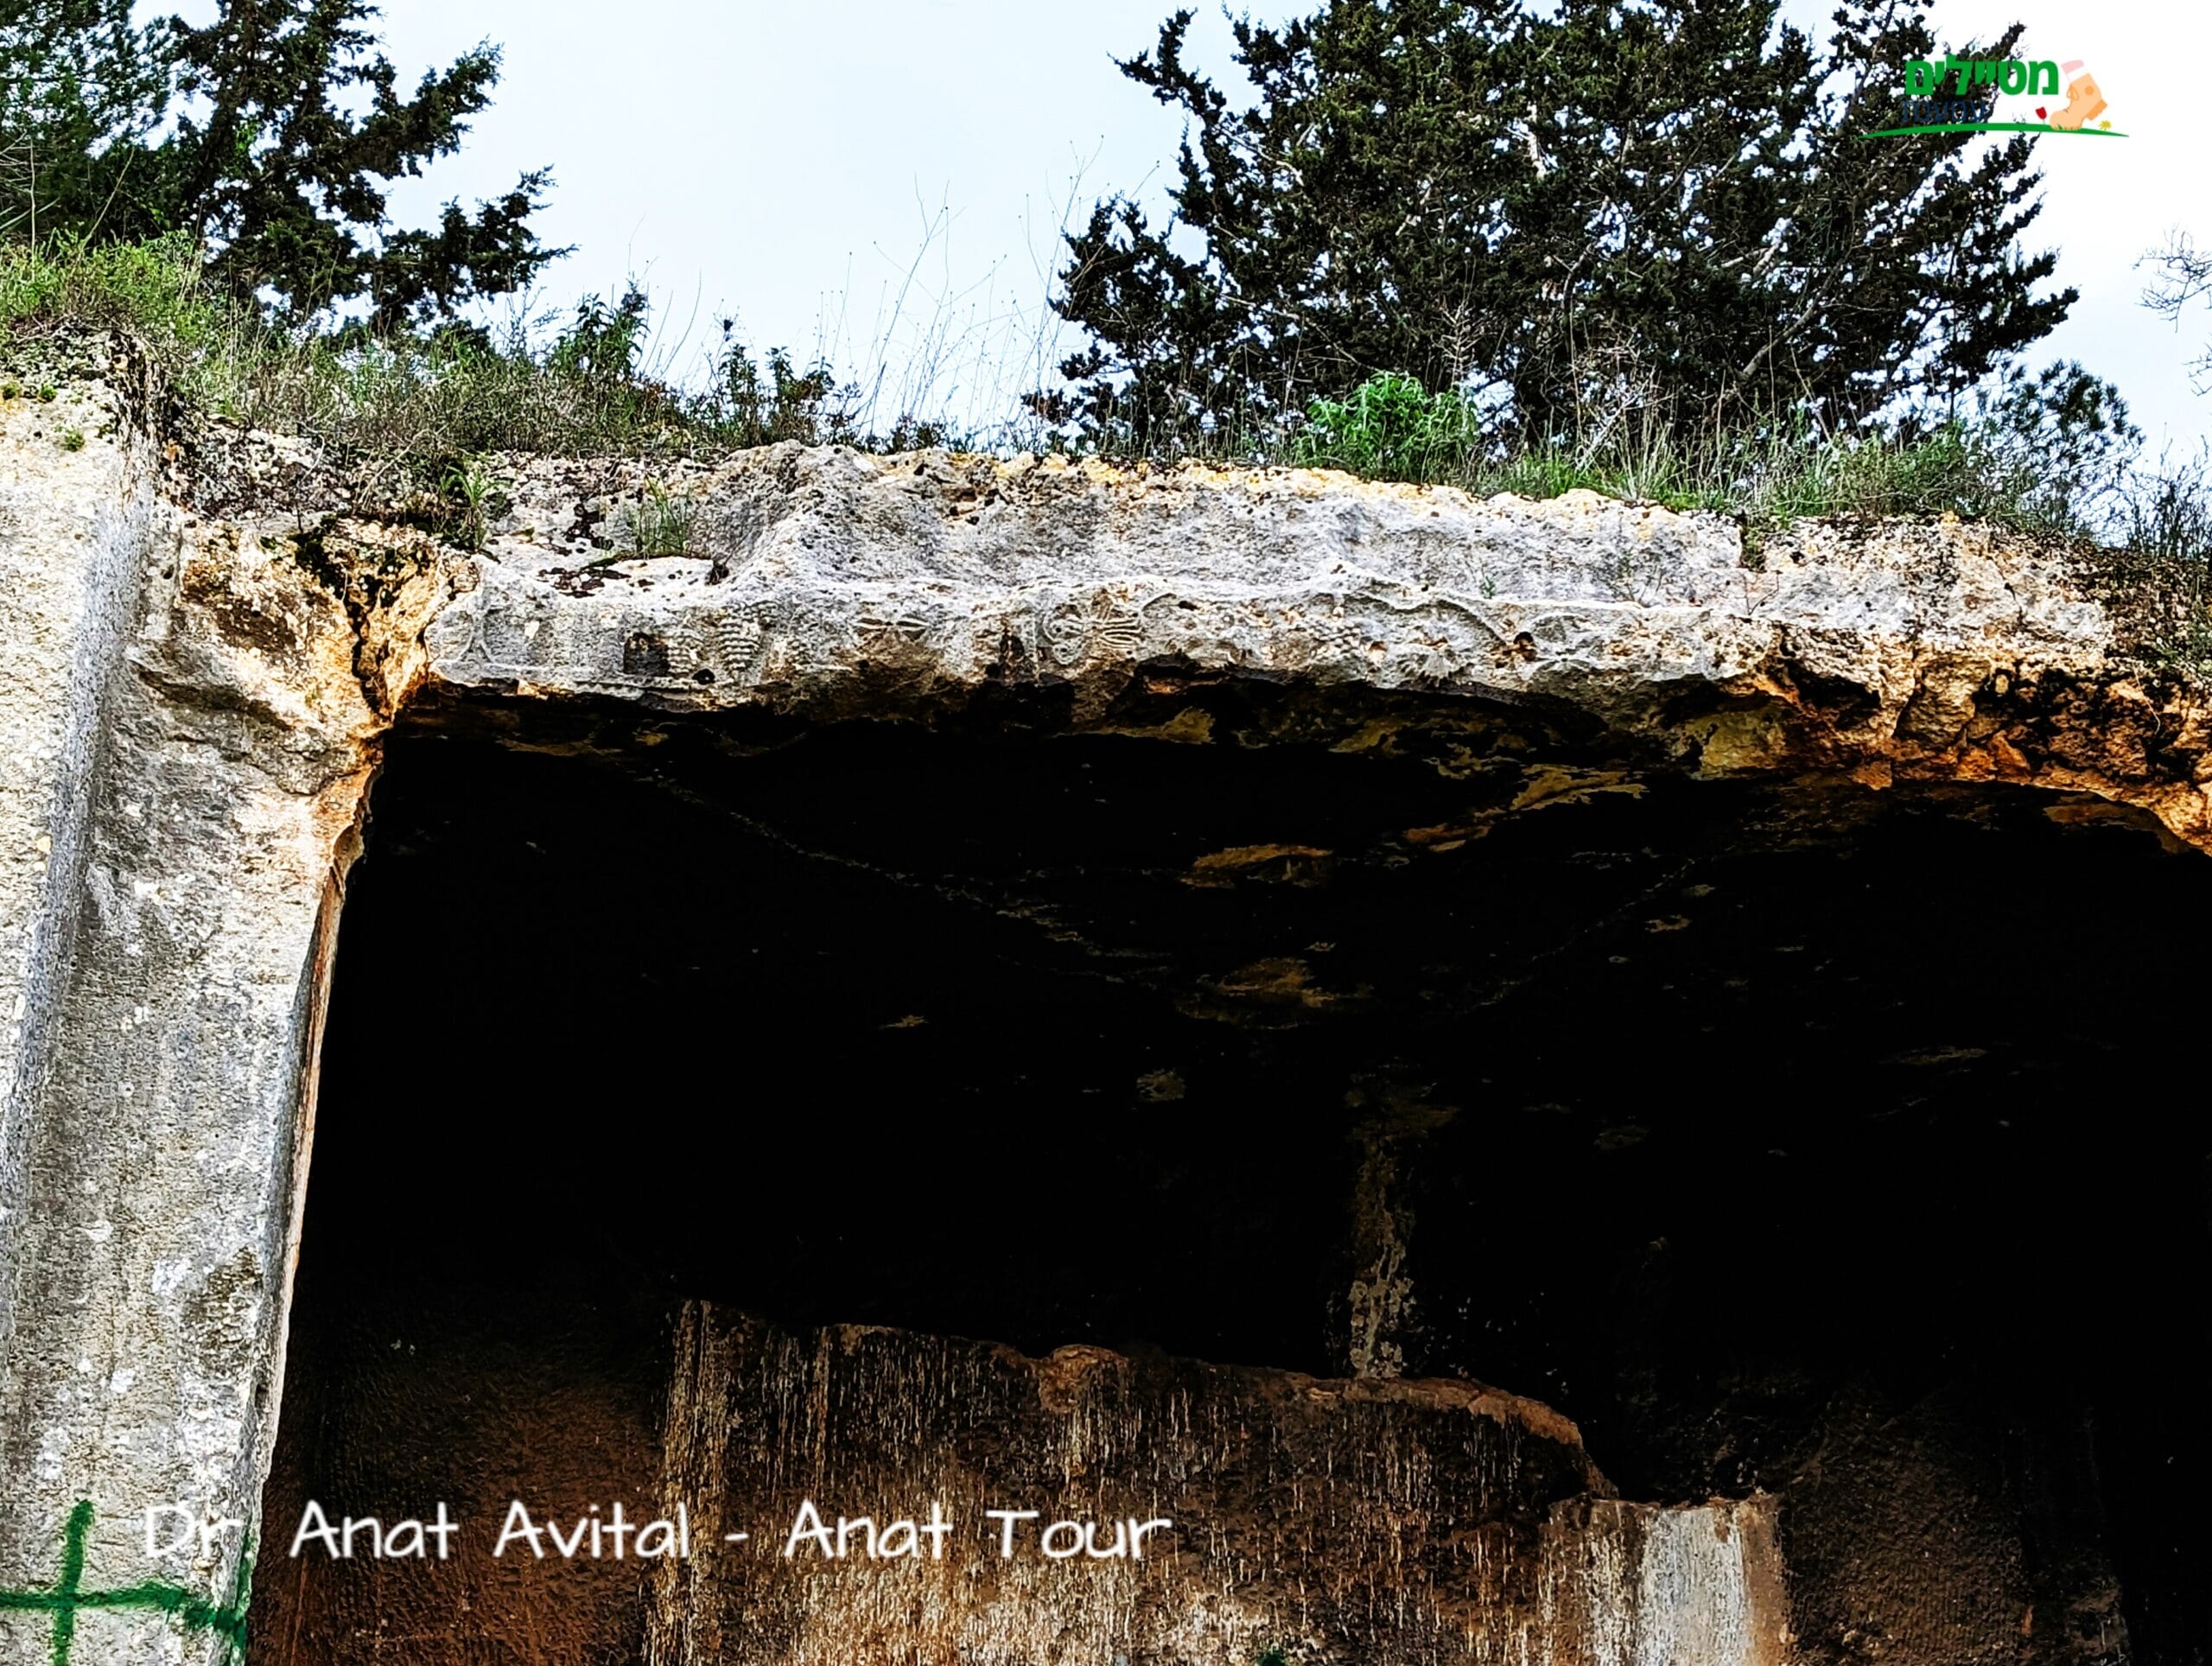 עיטורי גפן על חזית מערת קבורה מקטע עבוד (בית אריה) יהודית מימי הבית השני, צילום: ד"ר ענת אביטל